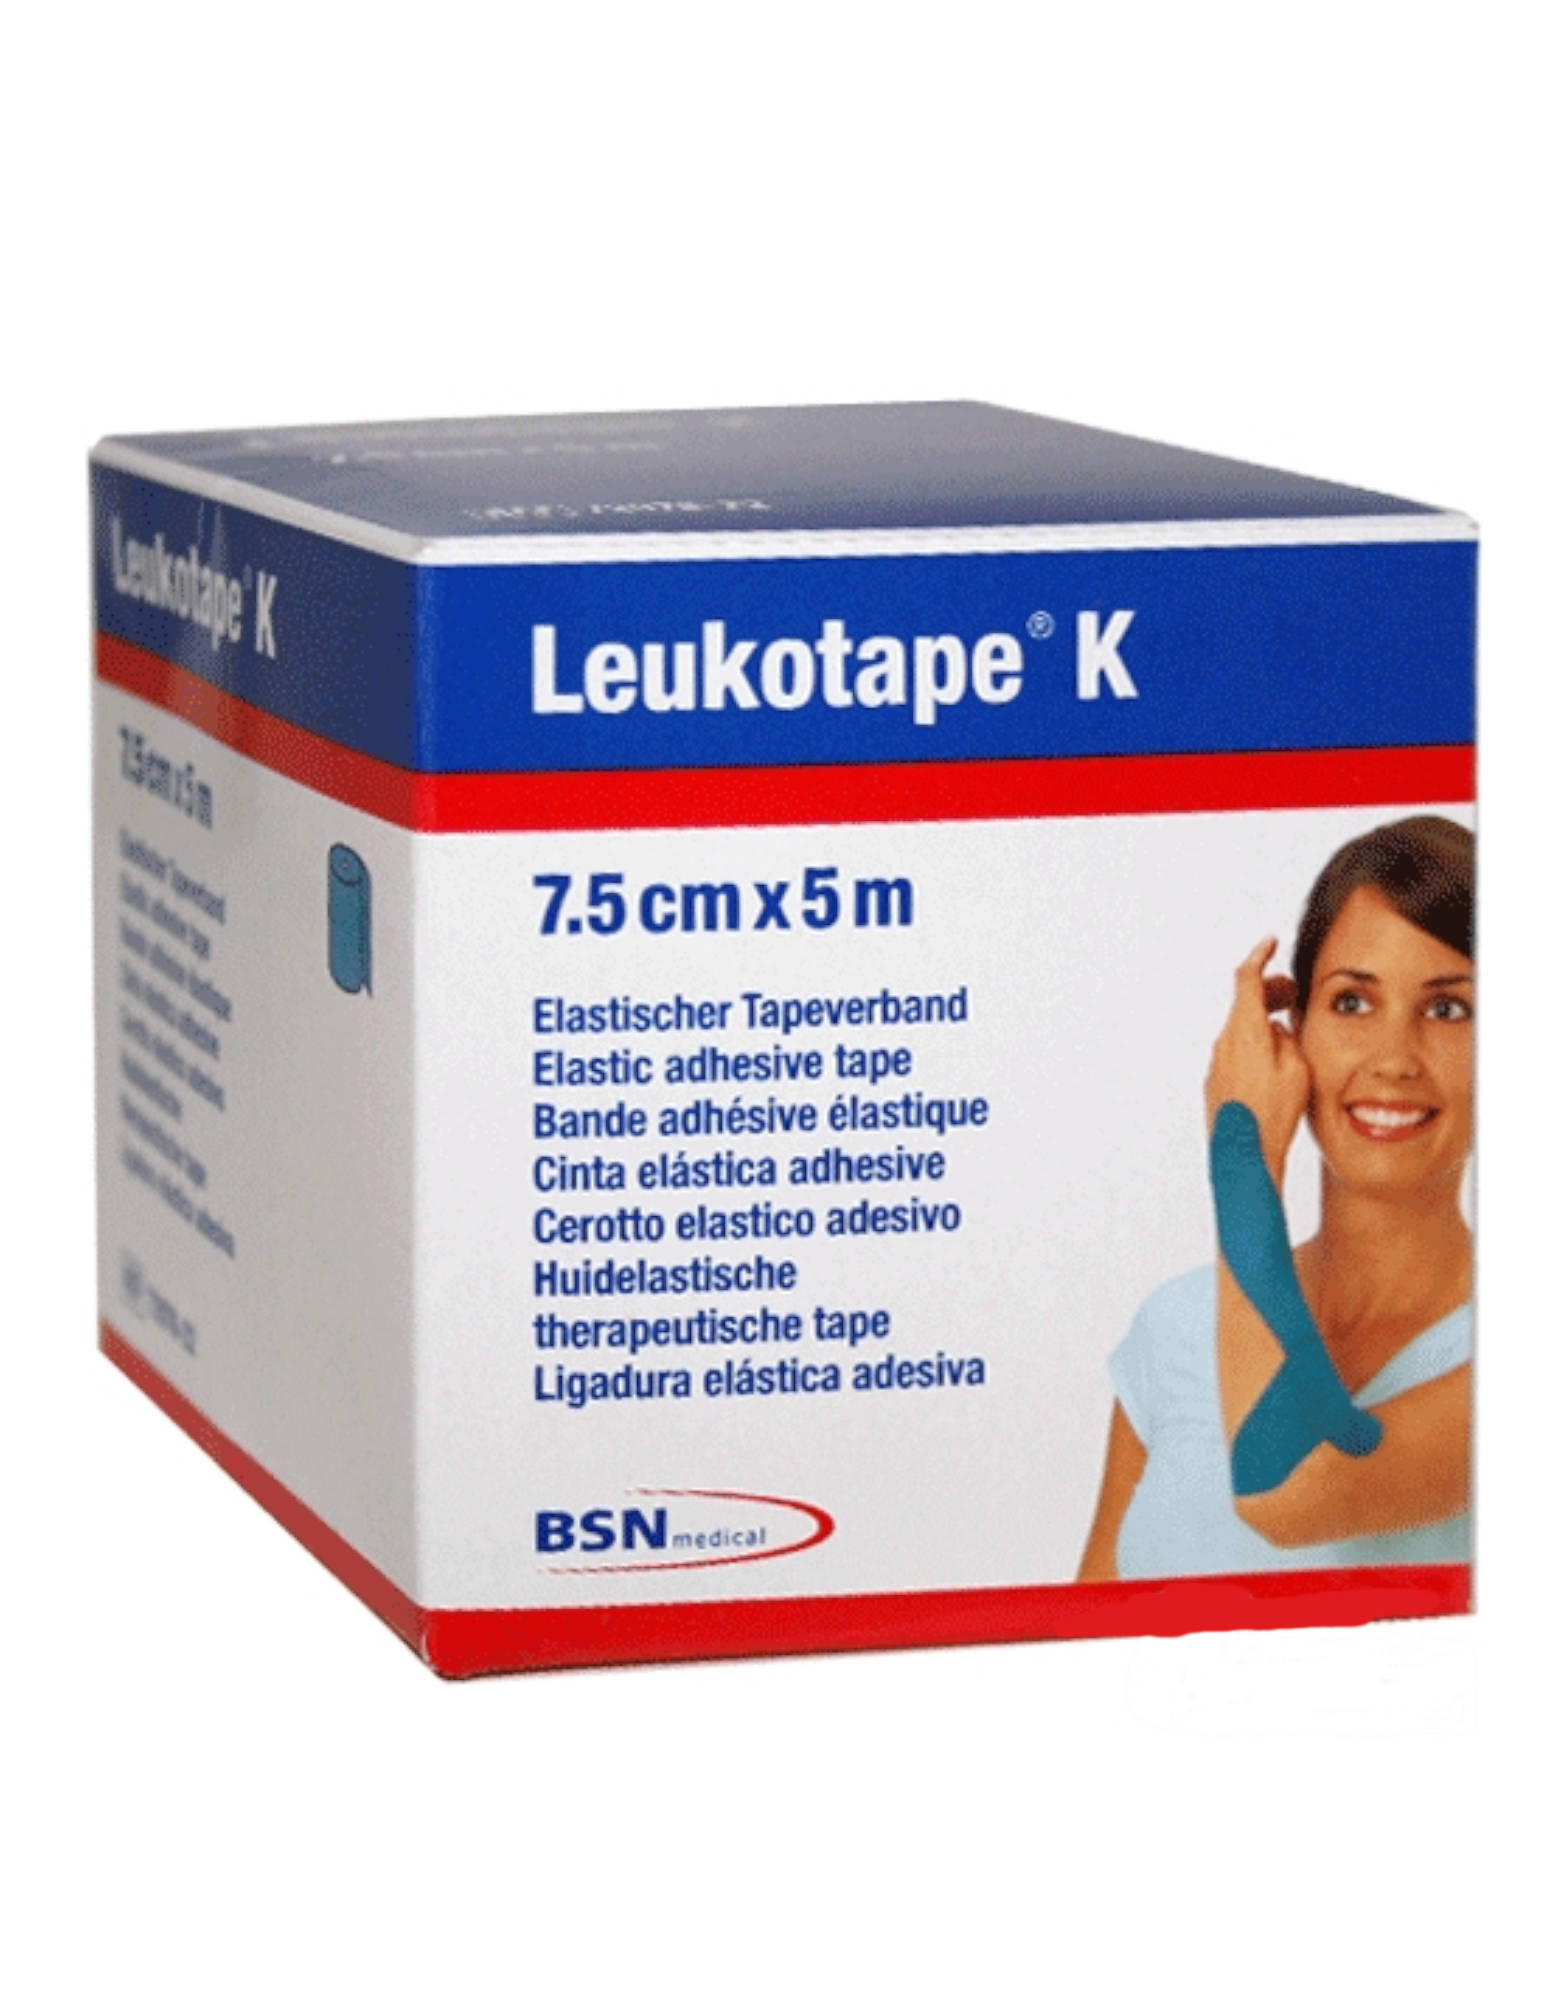 bsn medical leukotape k 1 cerotto elastico da 7,5cmx5m rosso